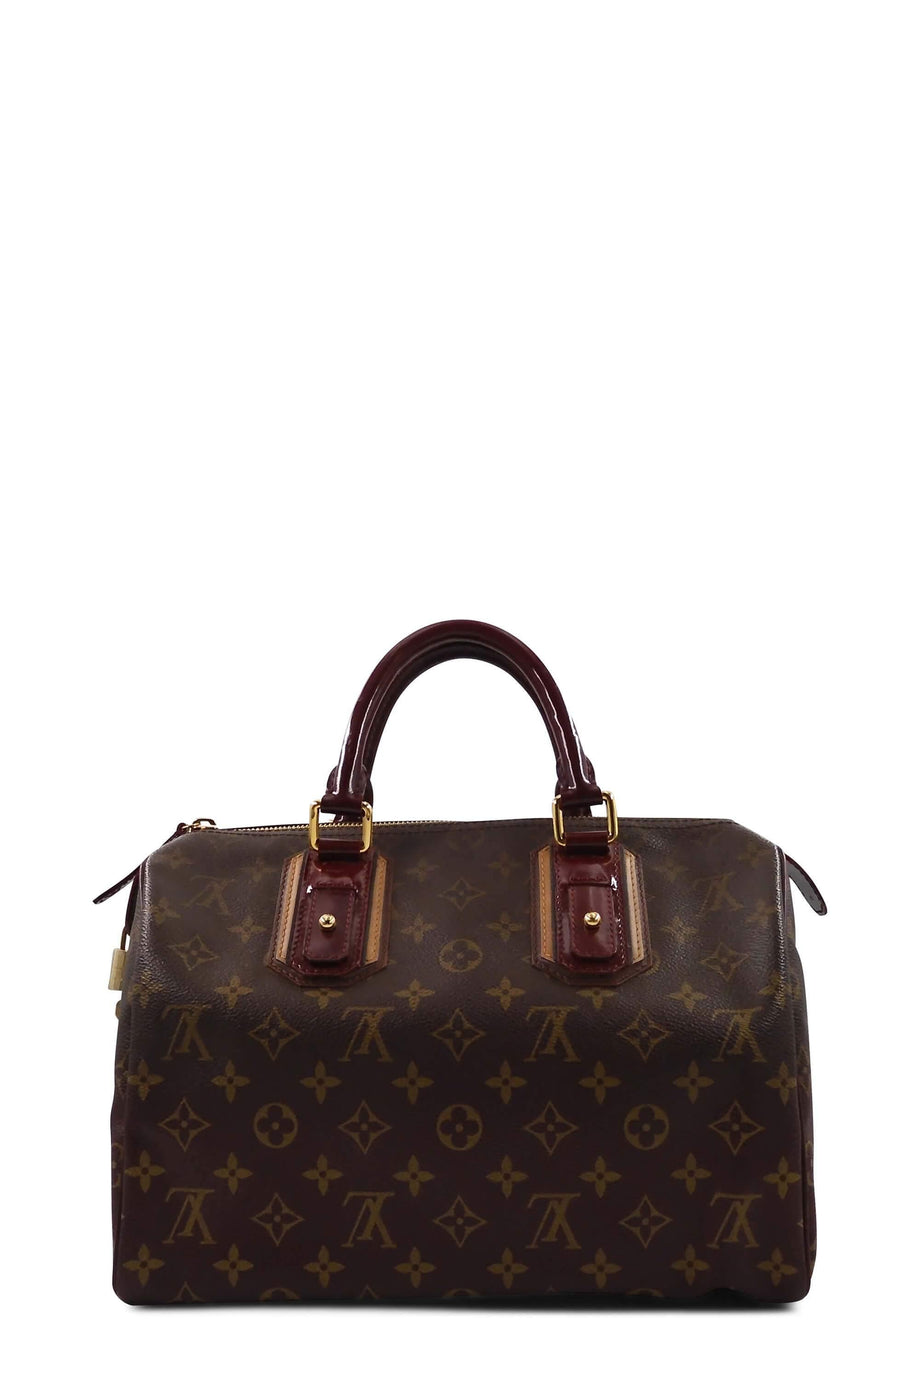 Louis Vuitton Speedy Handbag Limited Edition Monogram Mirage 30 Brown  135422162